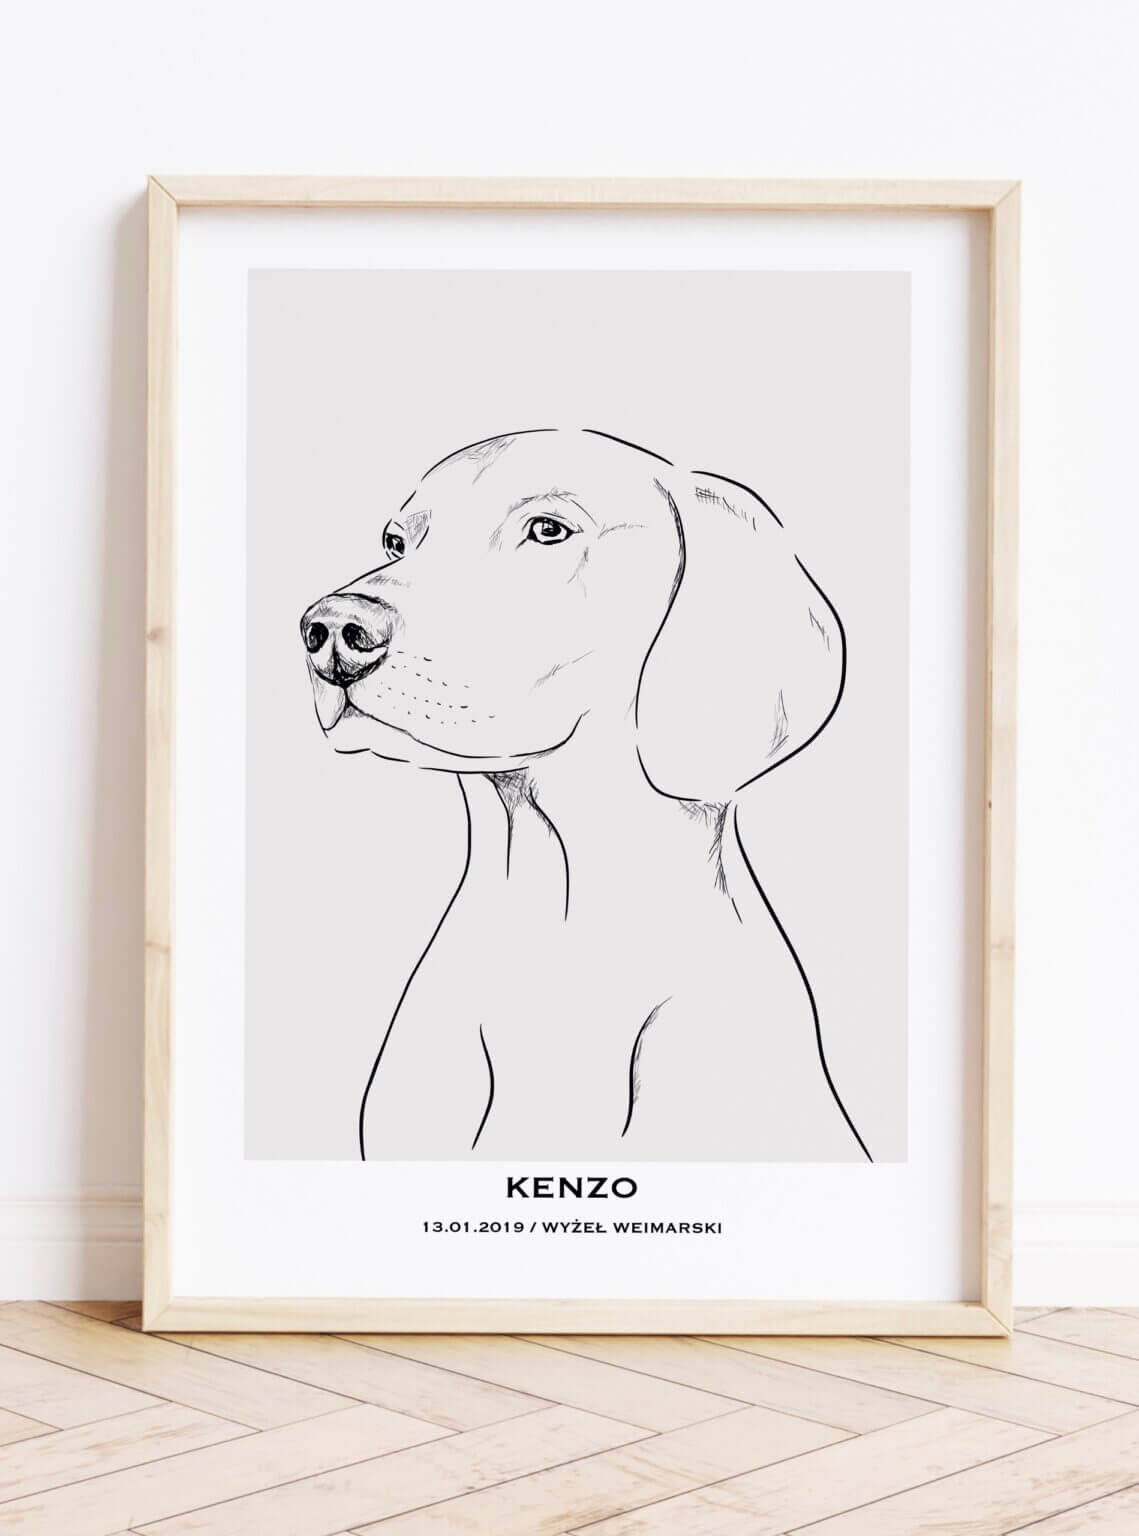 Prezent dla miłośnika psów- personalizowany plakat z psem (WYŻEŁ WEIMARSKI)